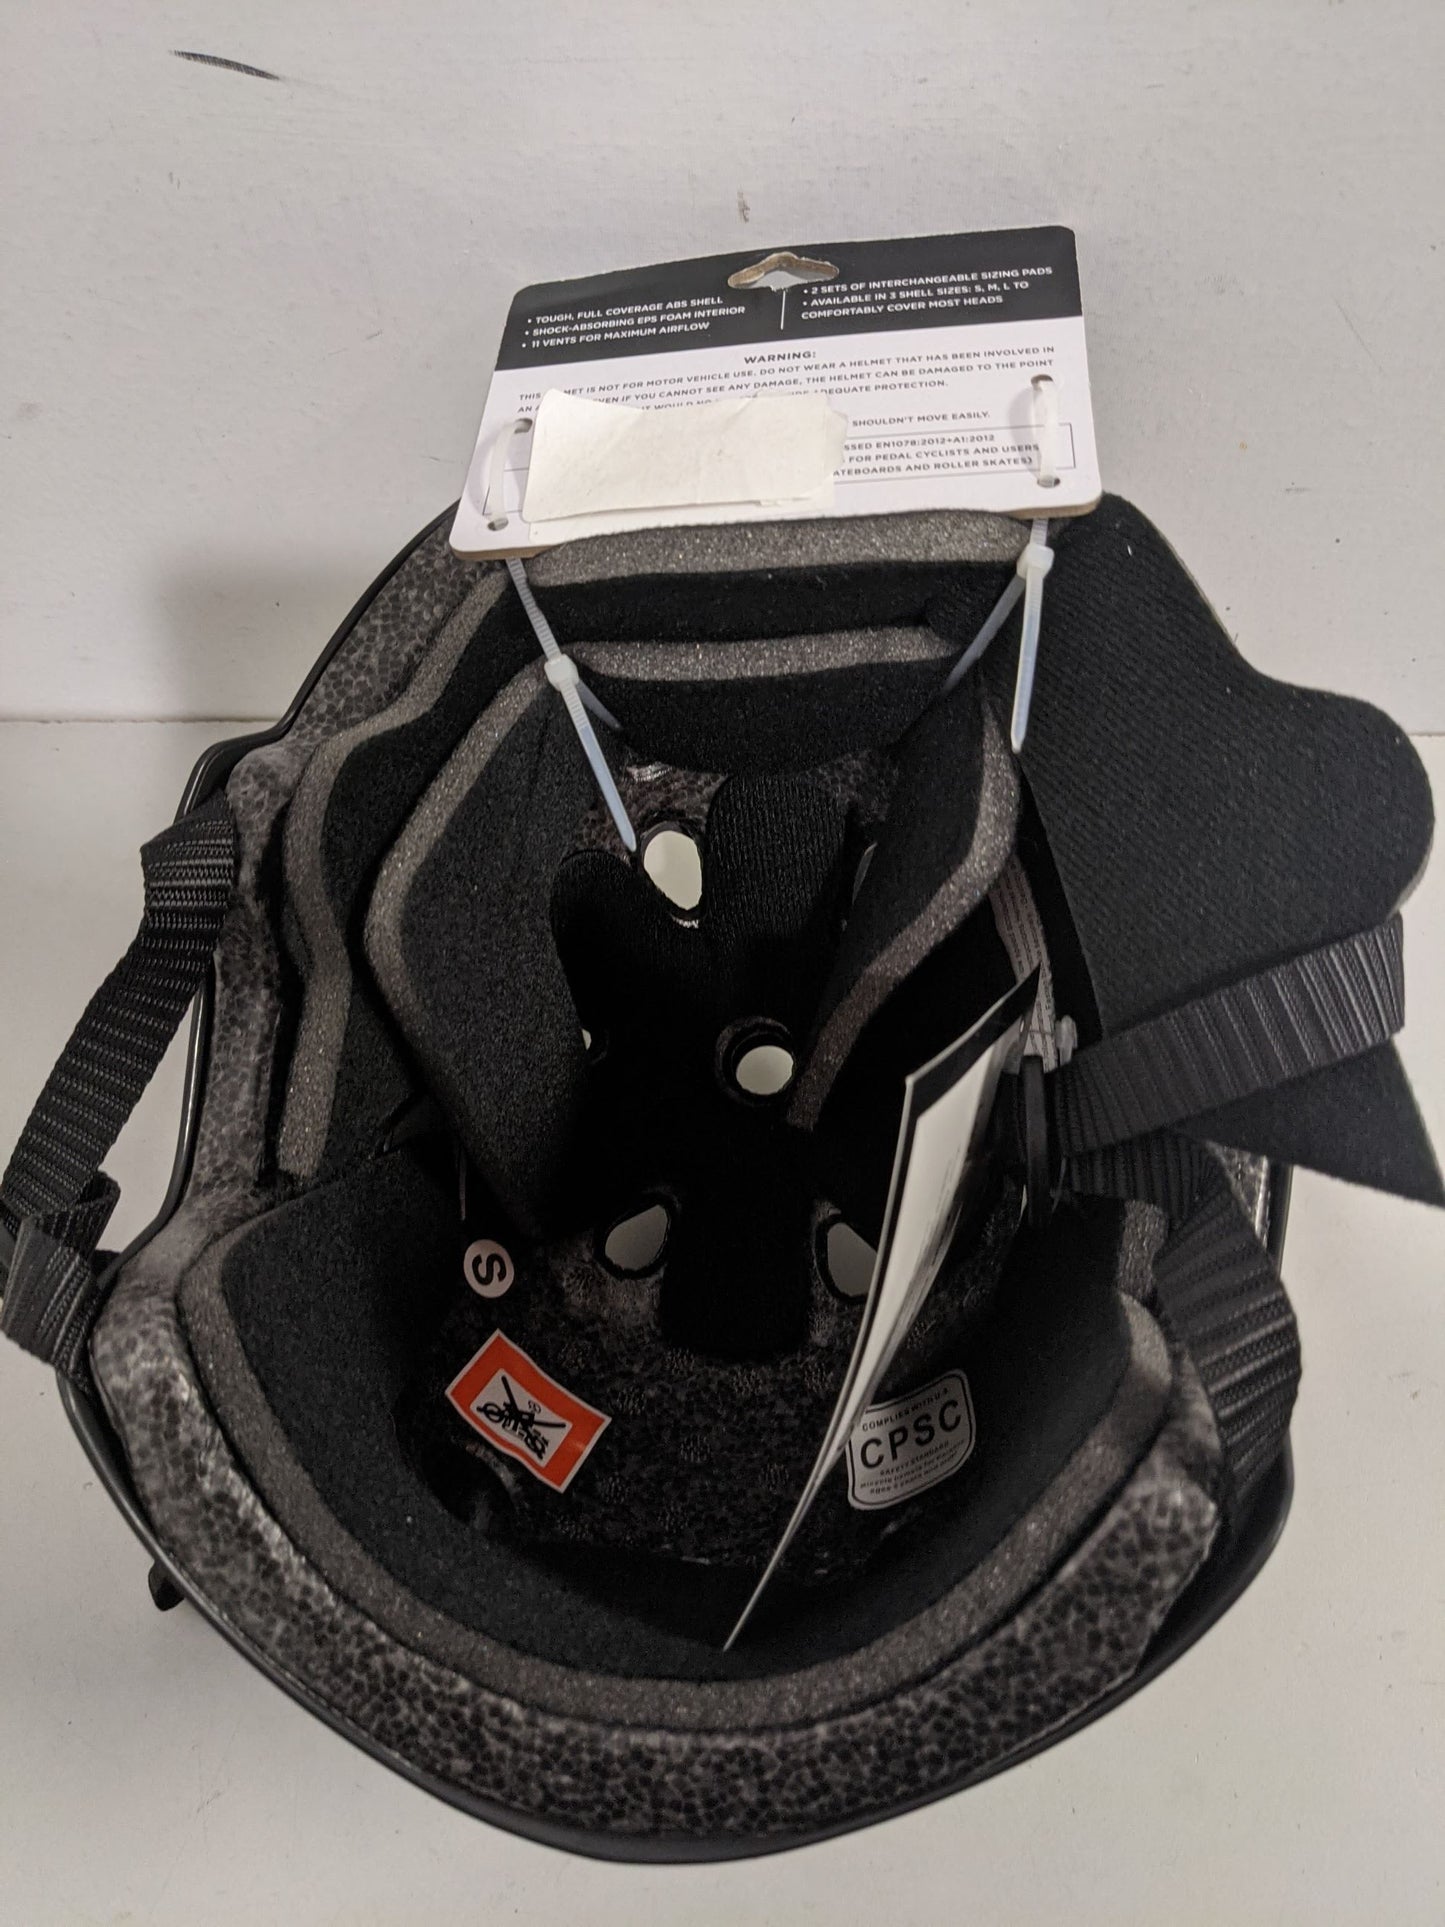 Retrospec CM-2 Bike Helmet Condition New Size S 51-55 cm Color Black